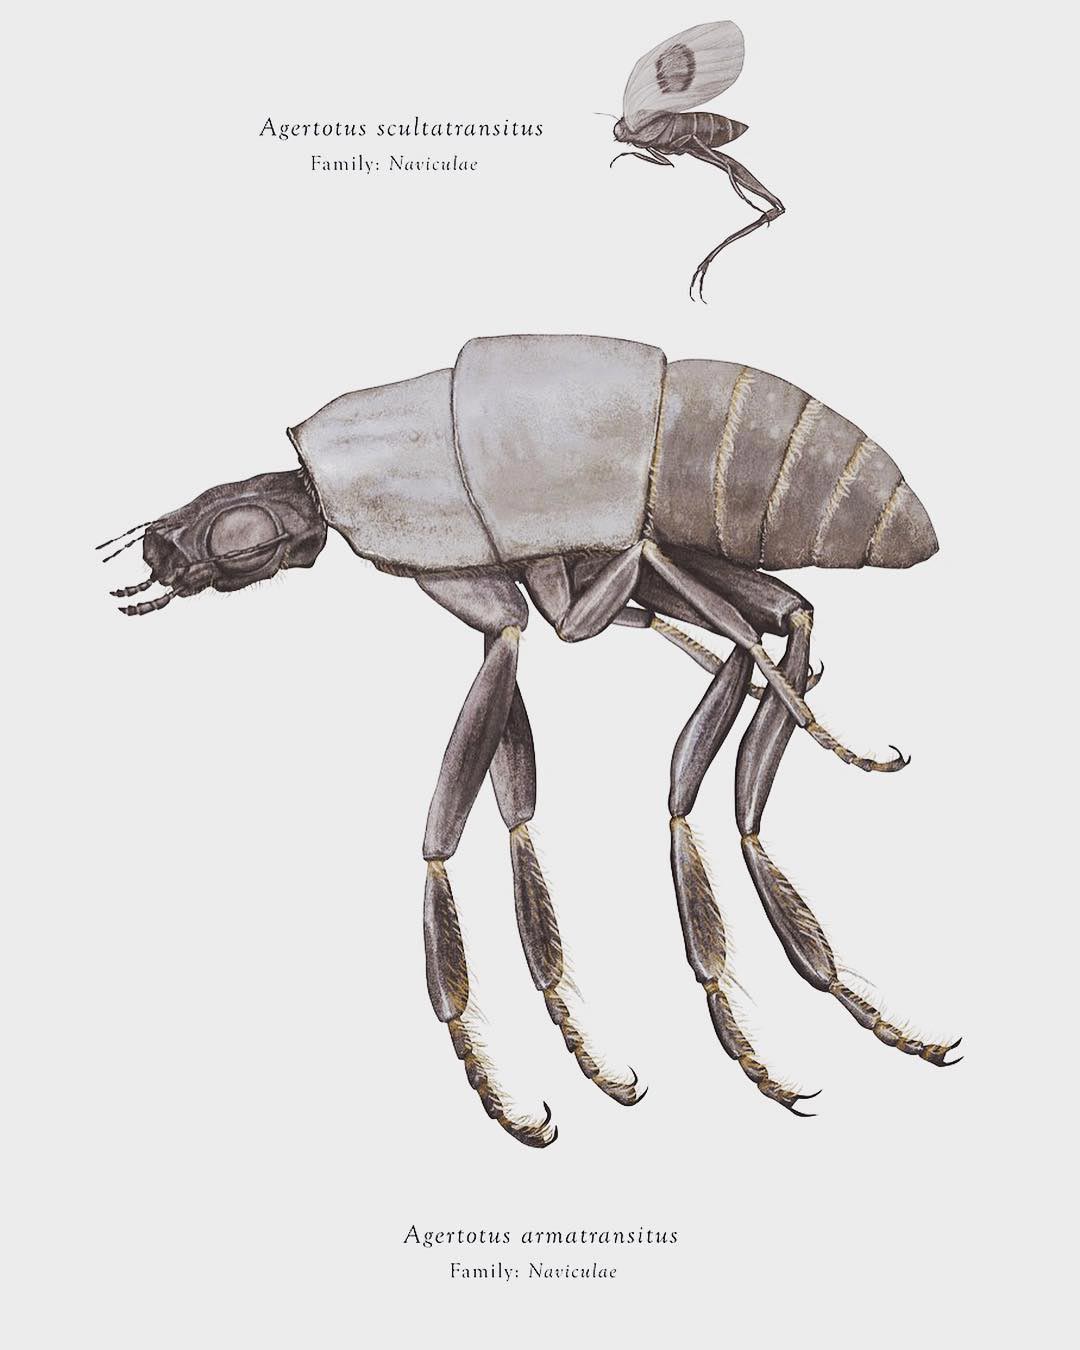 Agertotus armatransitus e Agertotus scultatransitus, Arthropoda Iconicus